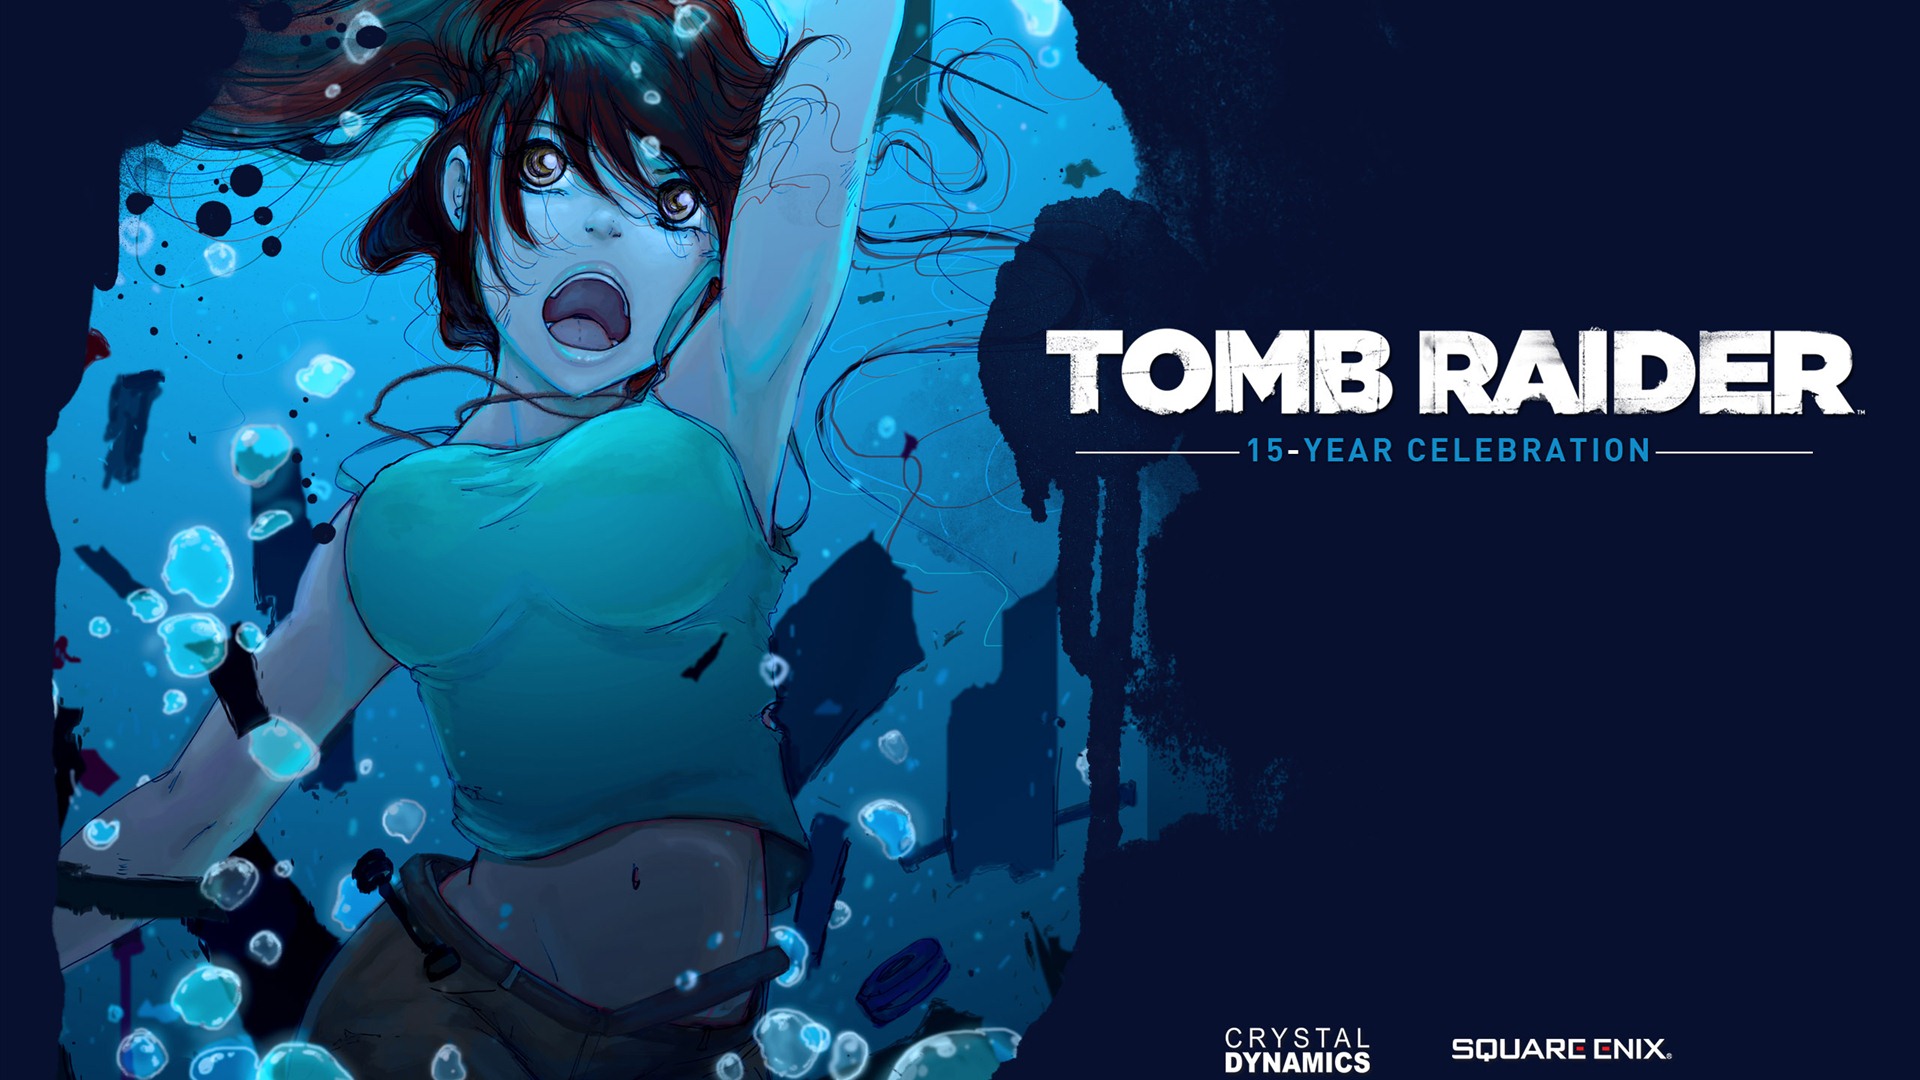 Tomb Raider 15-Year Celebration 古墓丽影15周年纪念版 高清壁纸9 - 1920x1080